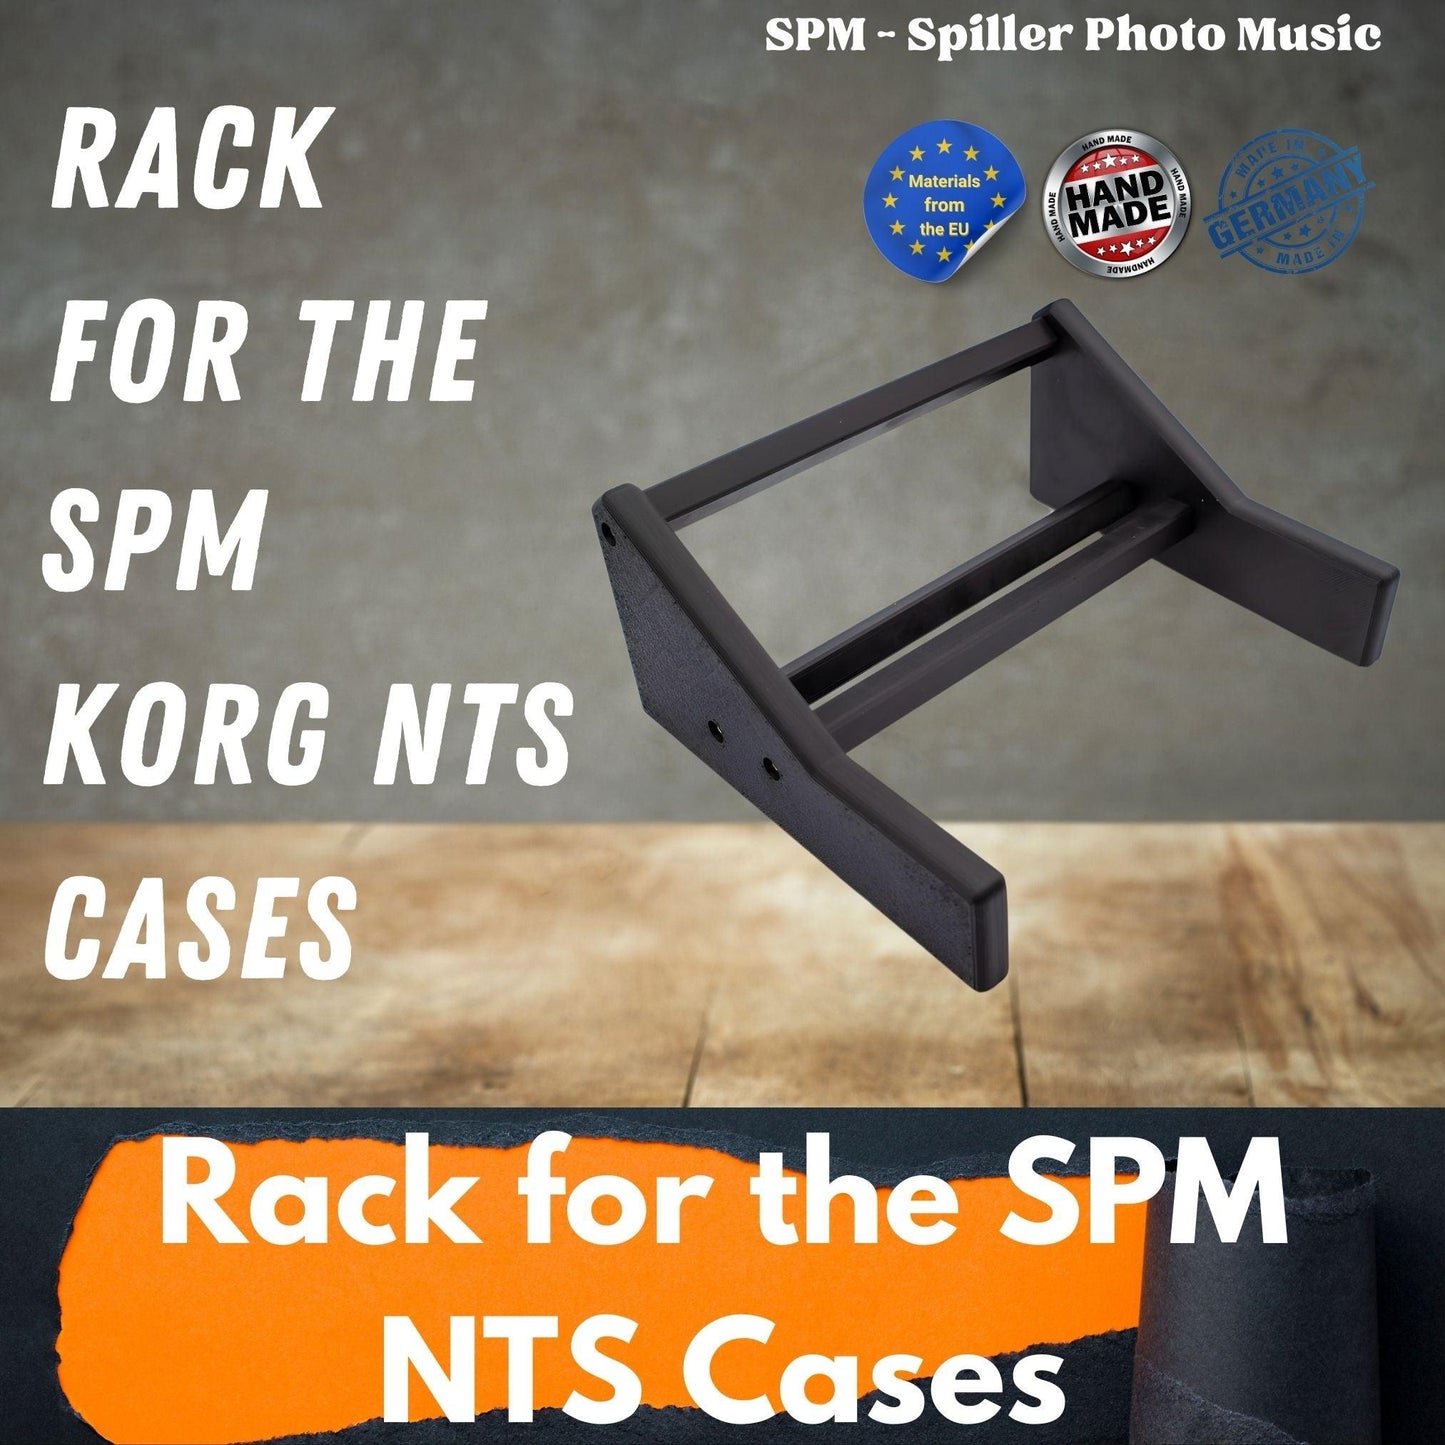 3D gedruckter Ständer für 3D gedruckte Gehäuse für Korg NTS-1 und Korg NTS-2 - SPM - Spillerphoto & Music